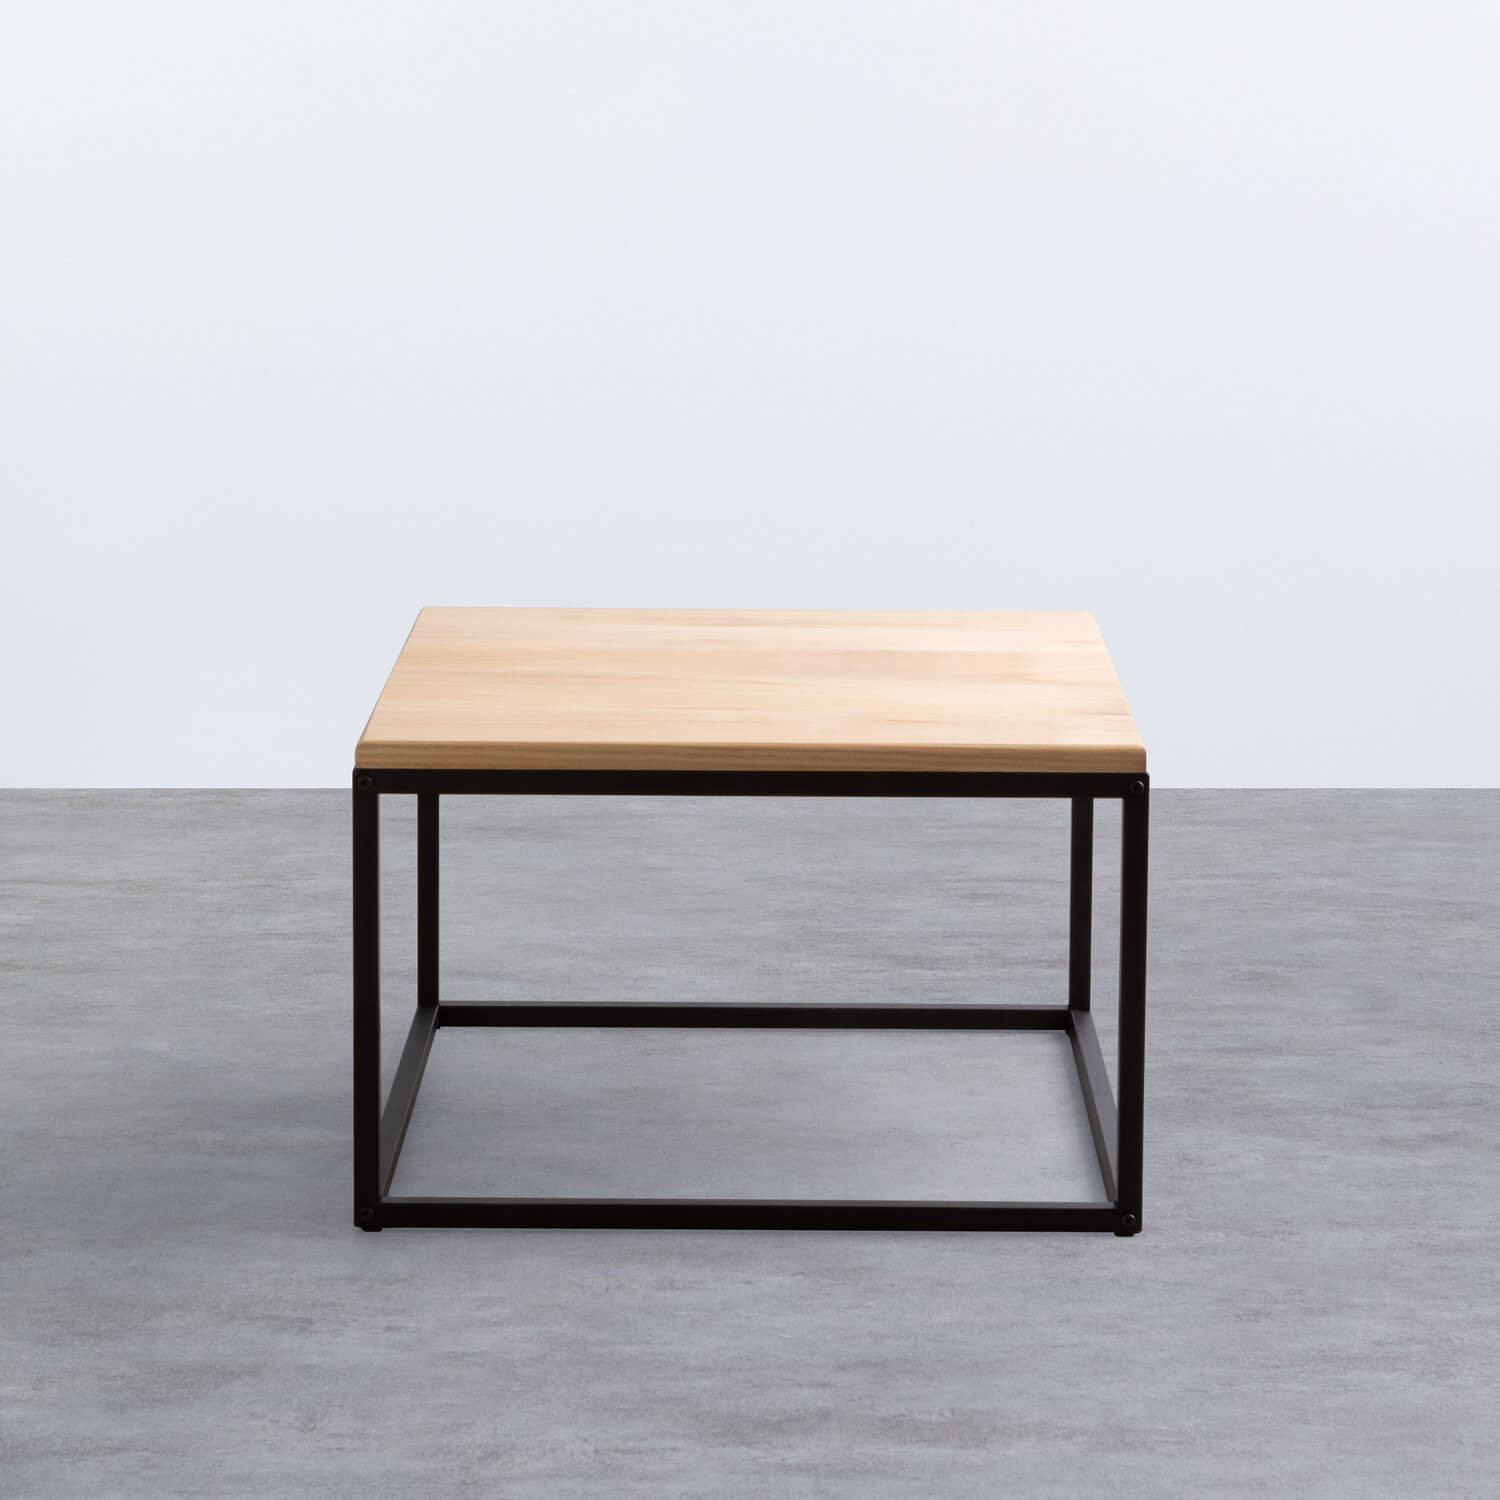 Table basse carrée en bois et métal (60x60 cm) Ferro, image de la gelerie 2